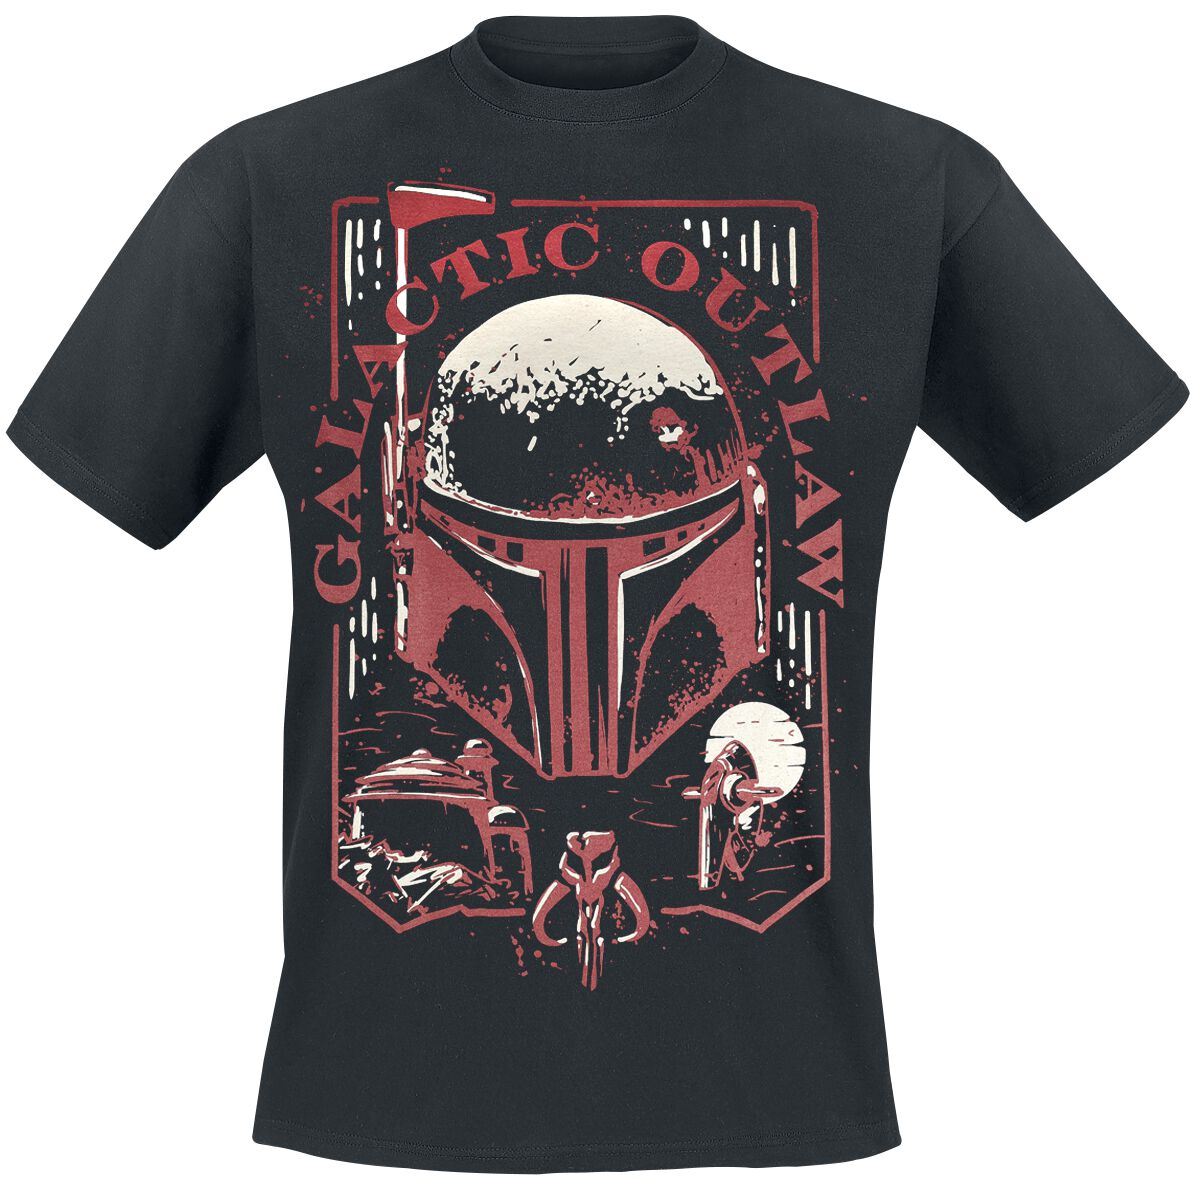 Star Wars T-Shirt - The Book Of Boba Fett - Galactic Outlaw - S bis 4XL - für Männer - Größe M - schwarz  - EMP exklusives Merchandise!